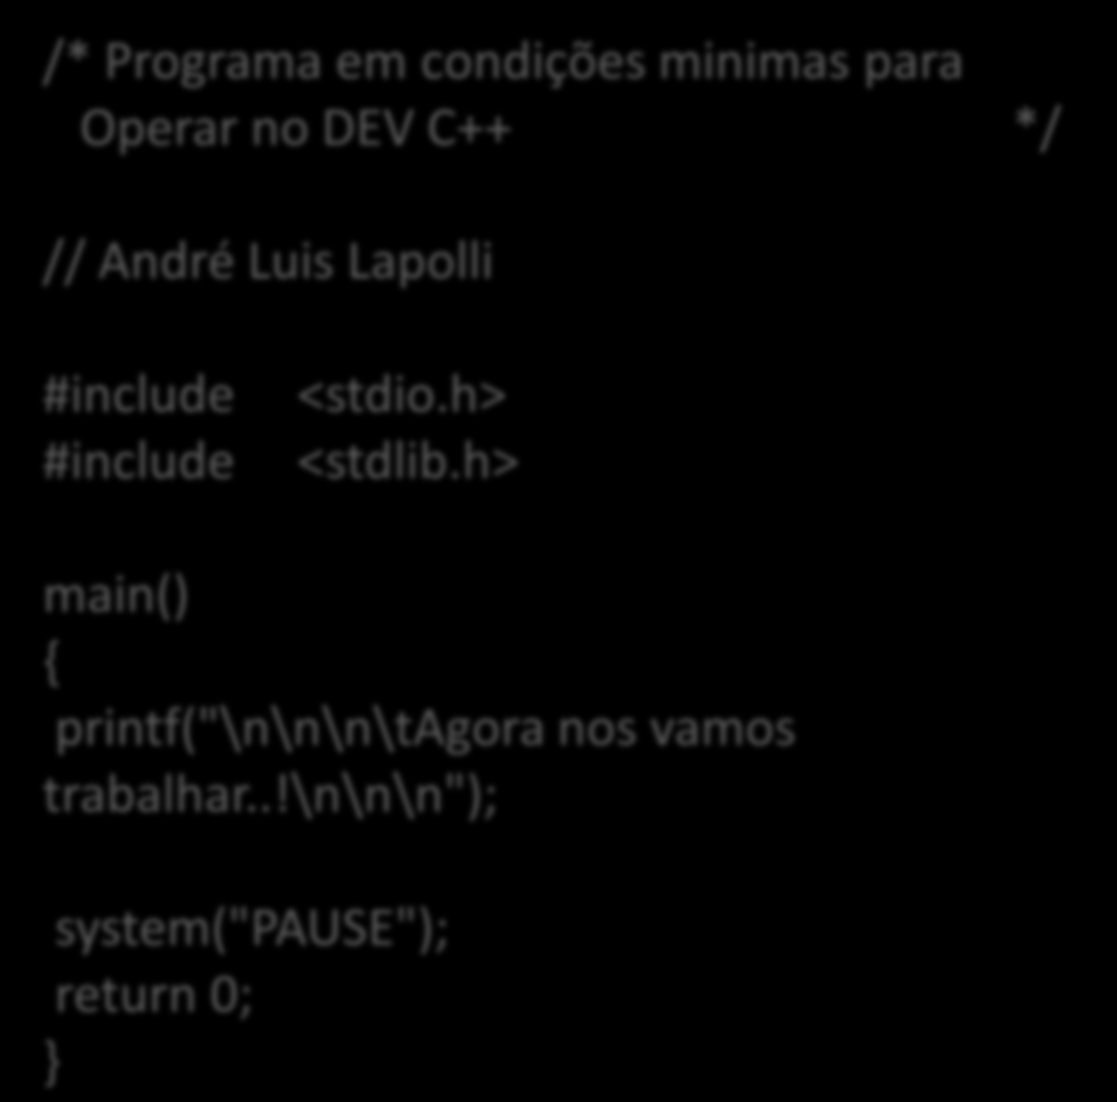 Diretivas Visualização apenas do programa: /* Programa em condições minimas para Operar no DEV C++ */ // André Luis